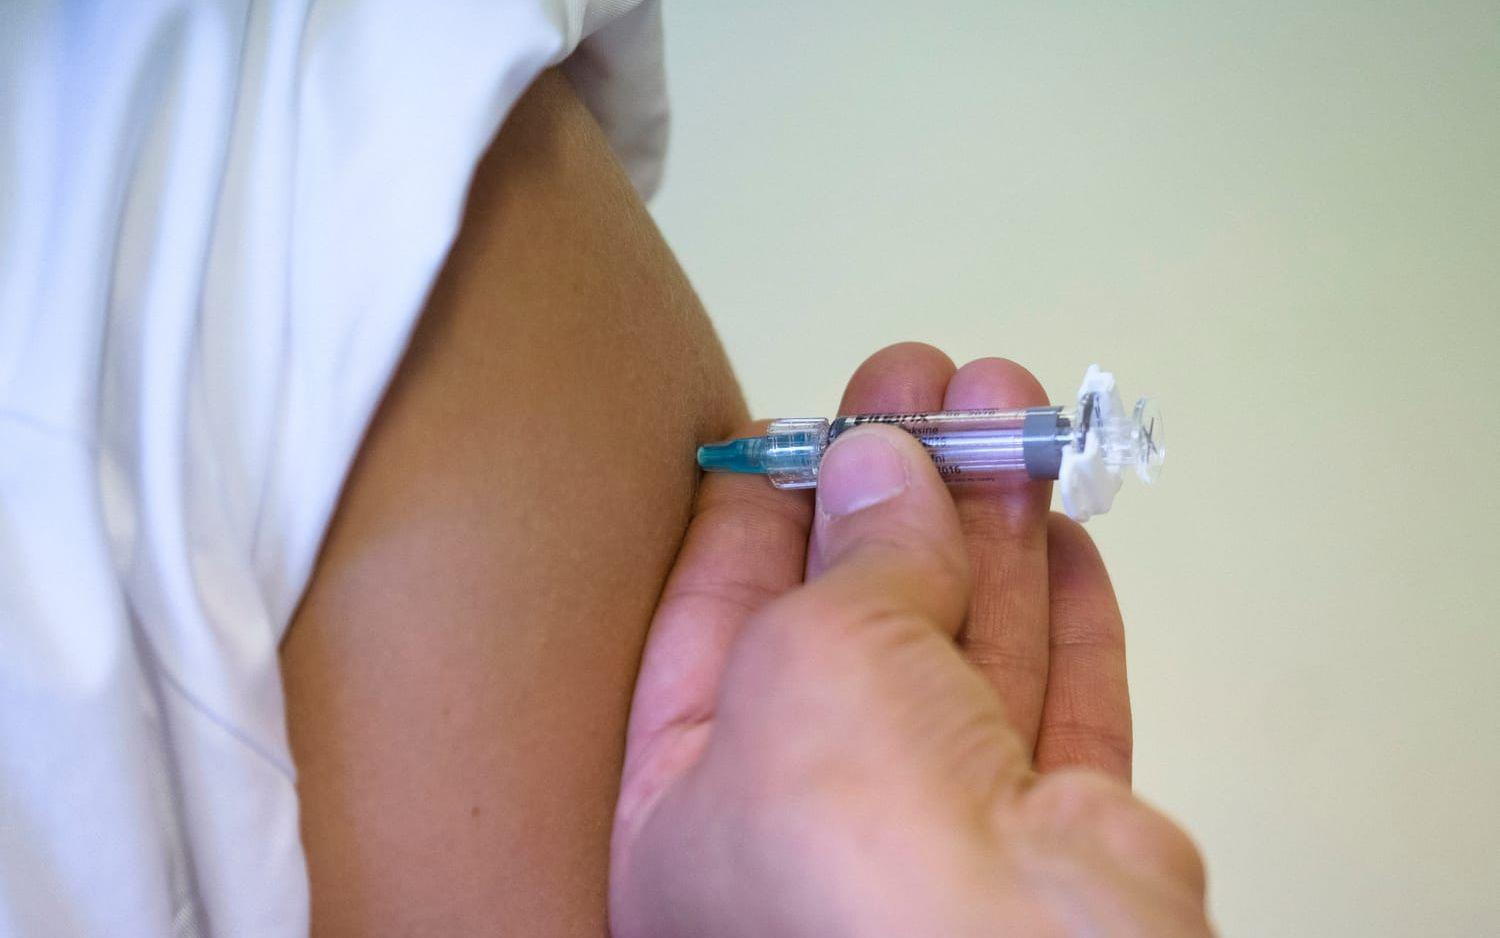 Gravida, personer över 65 och personer med andra sjukdomar eller nedsatt immunförsvar rekommenderas att vaccinera sig mot influensa. Bild: TT